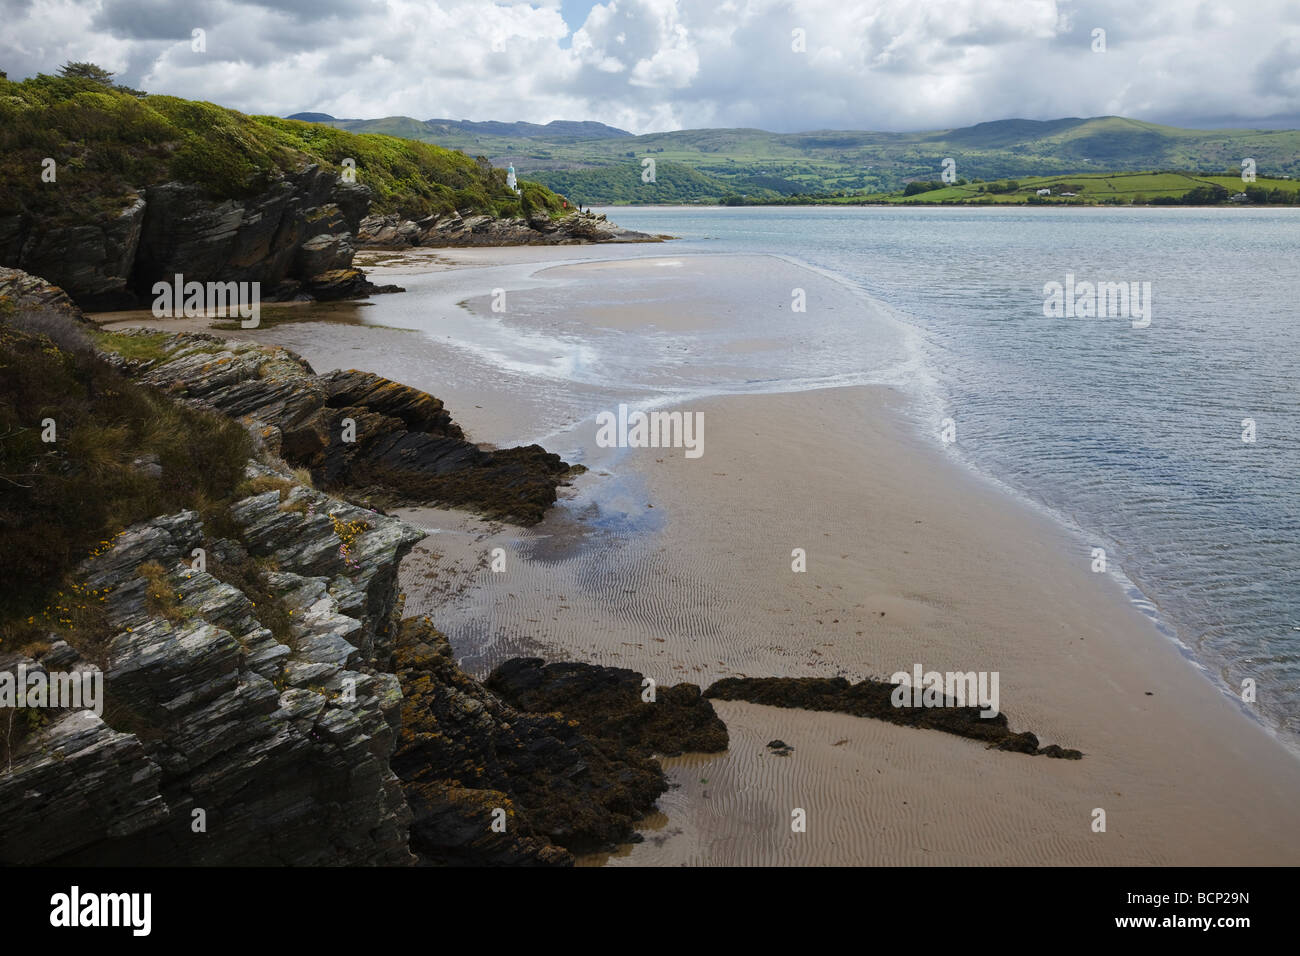 Beach at Portmeirion, Snowdonia, Gwynedd, Wales Stock Photo